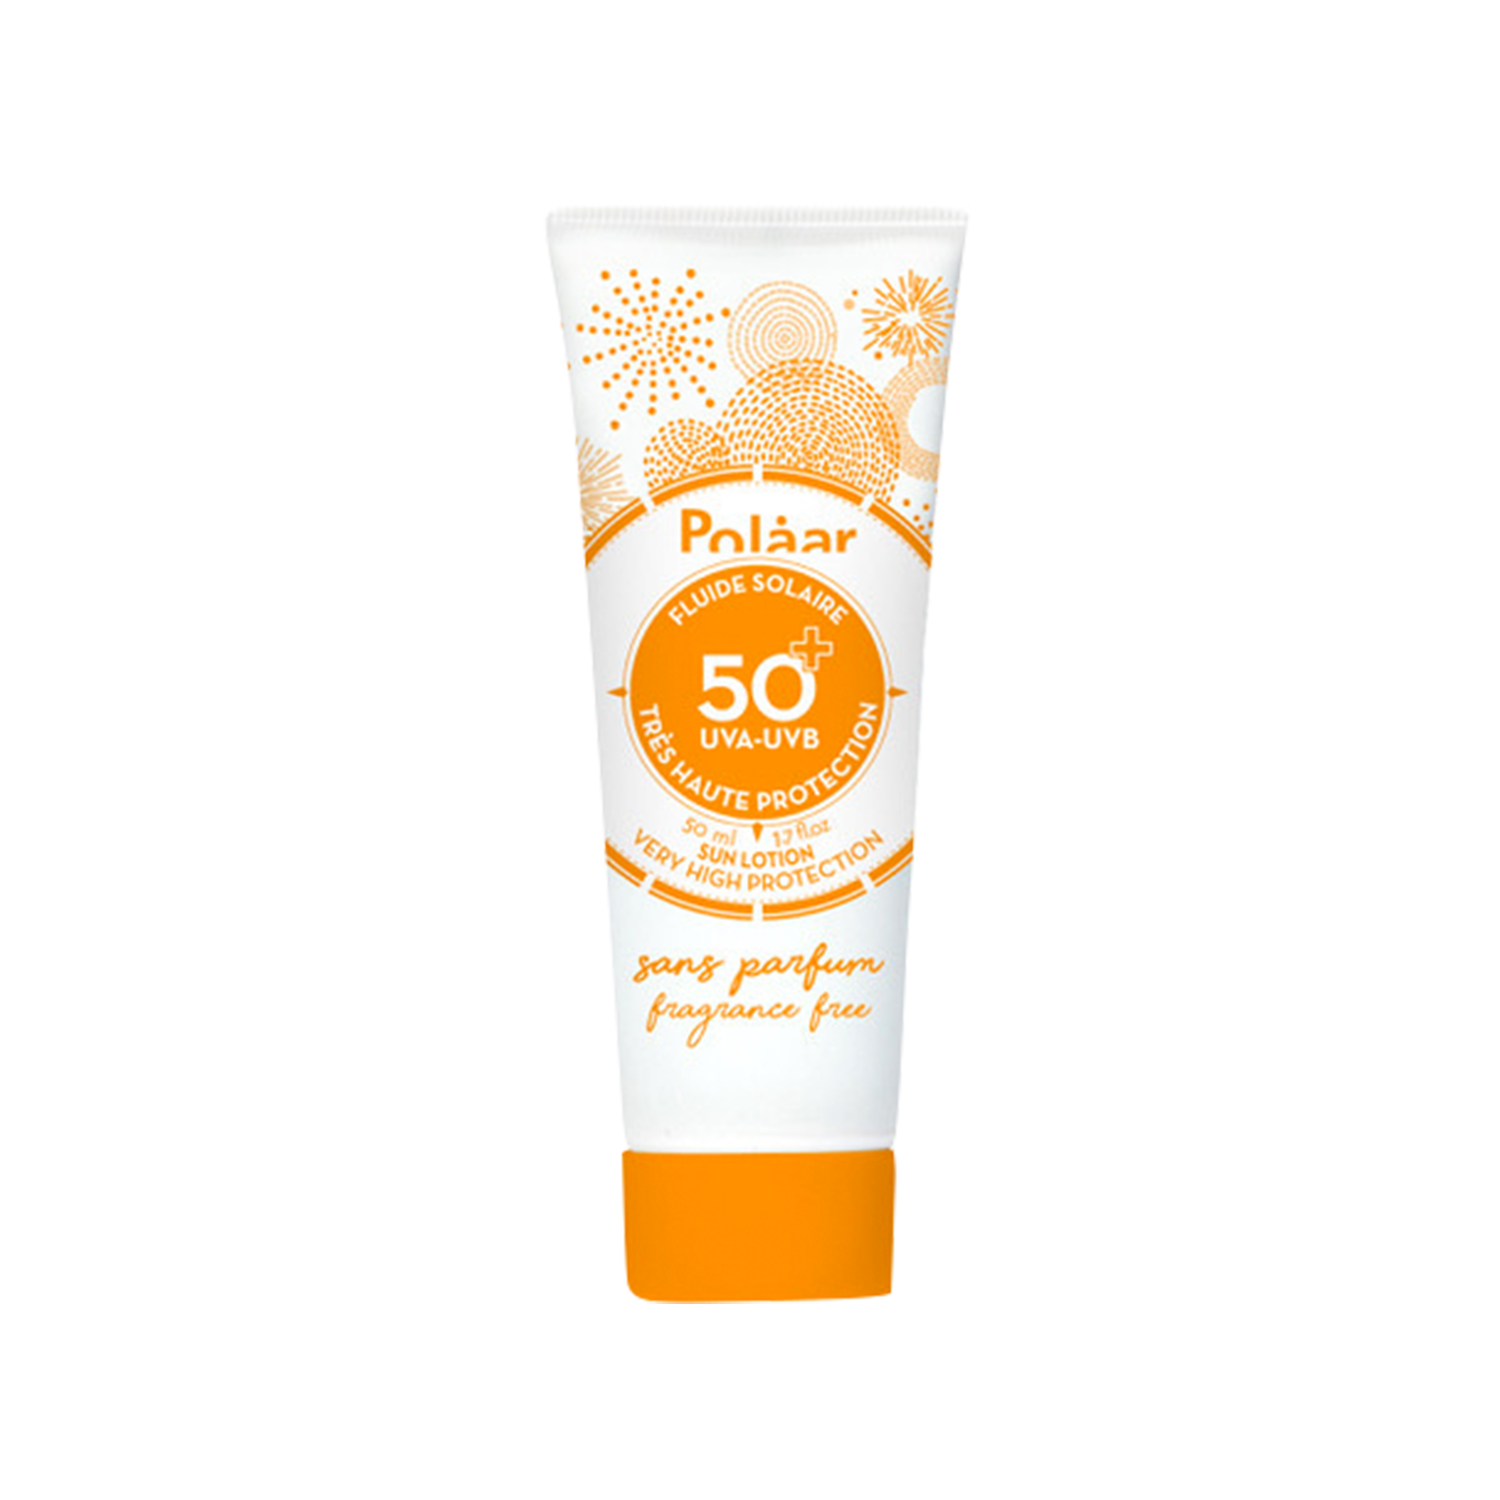 Polaar Sun Lotion SPF 50+ Very High Protection fragrance free Polaar Sun Lotion SPF 50+ Very High Protection fragrance free 1